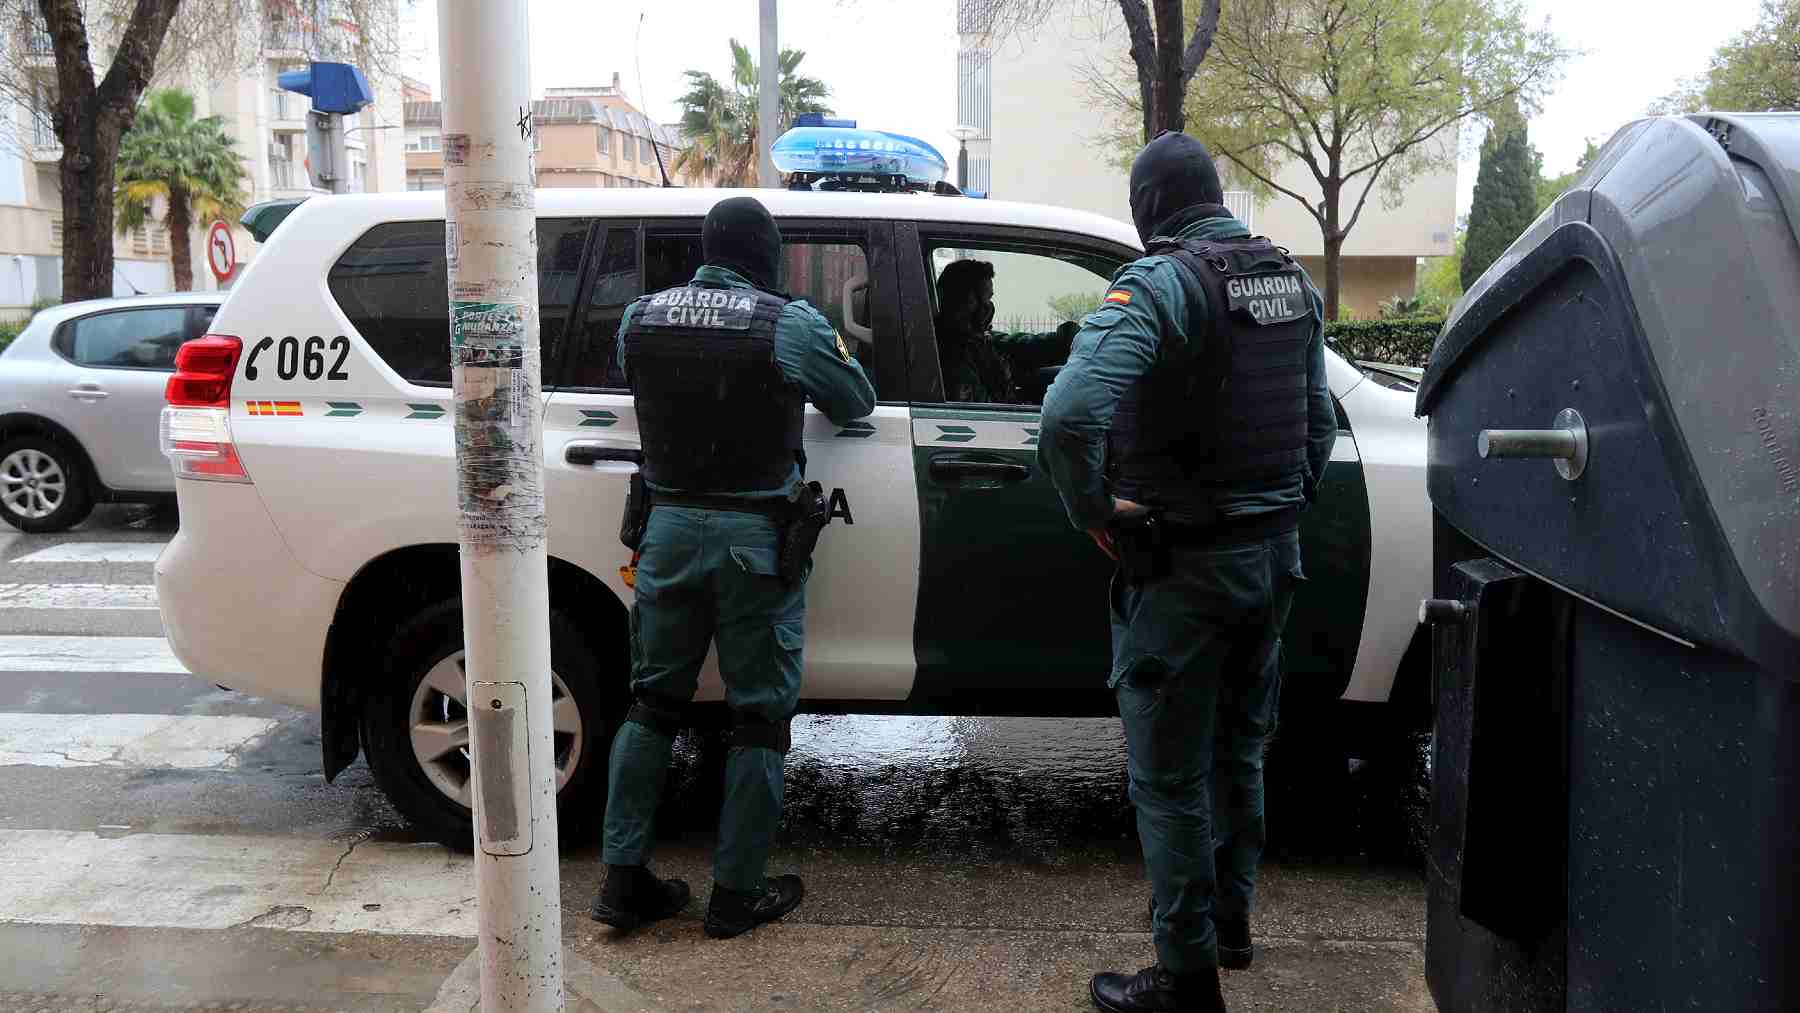 Varios guardias civiles durante una operación contra el tráfico de drogas, en Palma. Isaac Buj/Europa Press